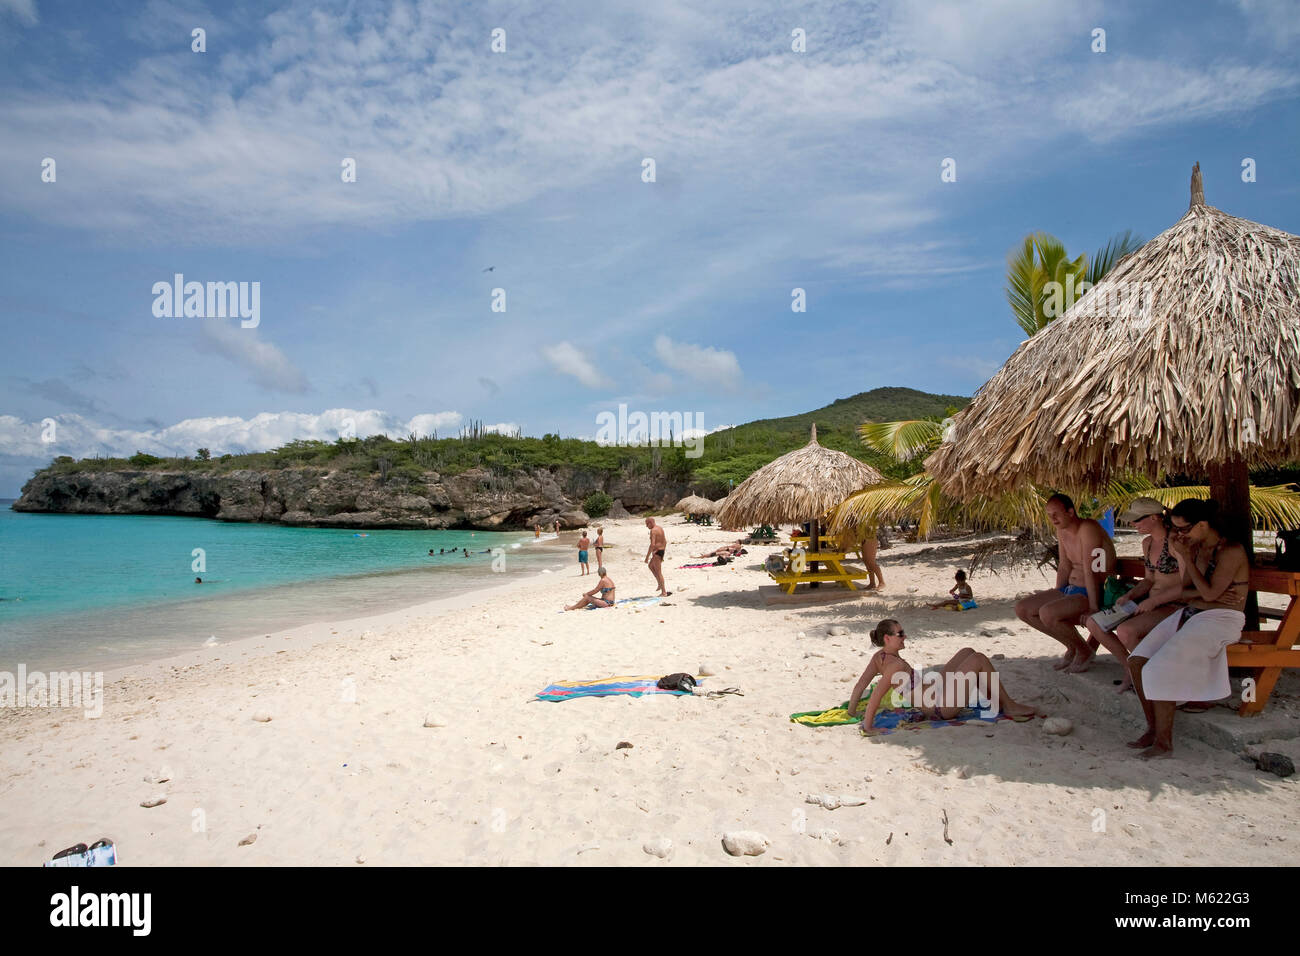 Les touristes à la plage populaire 'Grote Knip', Curacao, Antilles, Caraïbes, mer des Caraïbes Banque D'Images